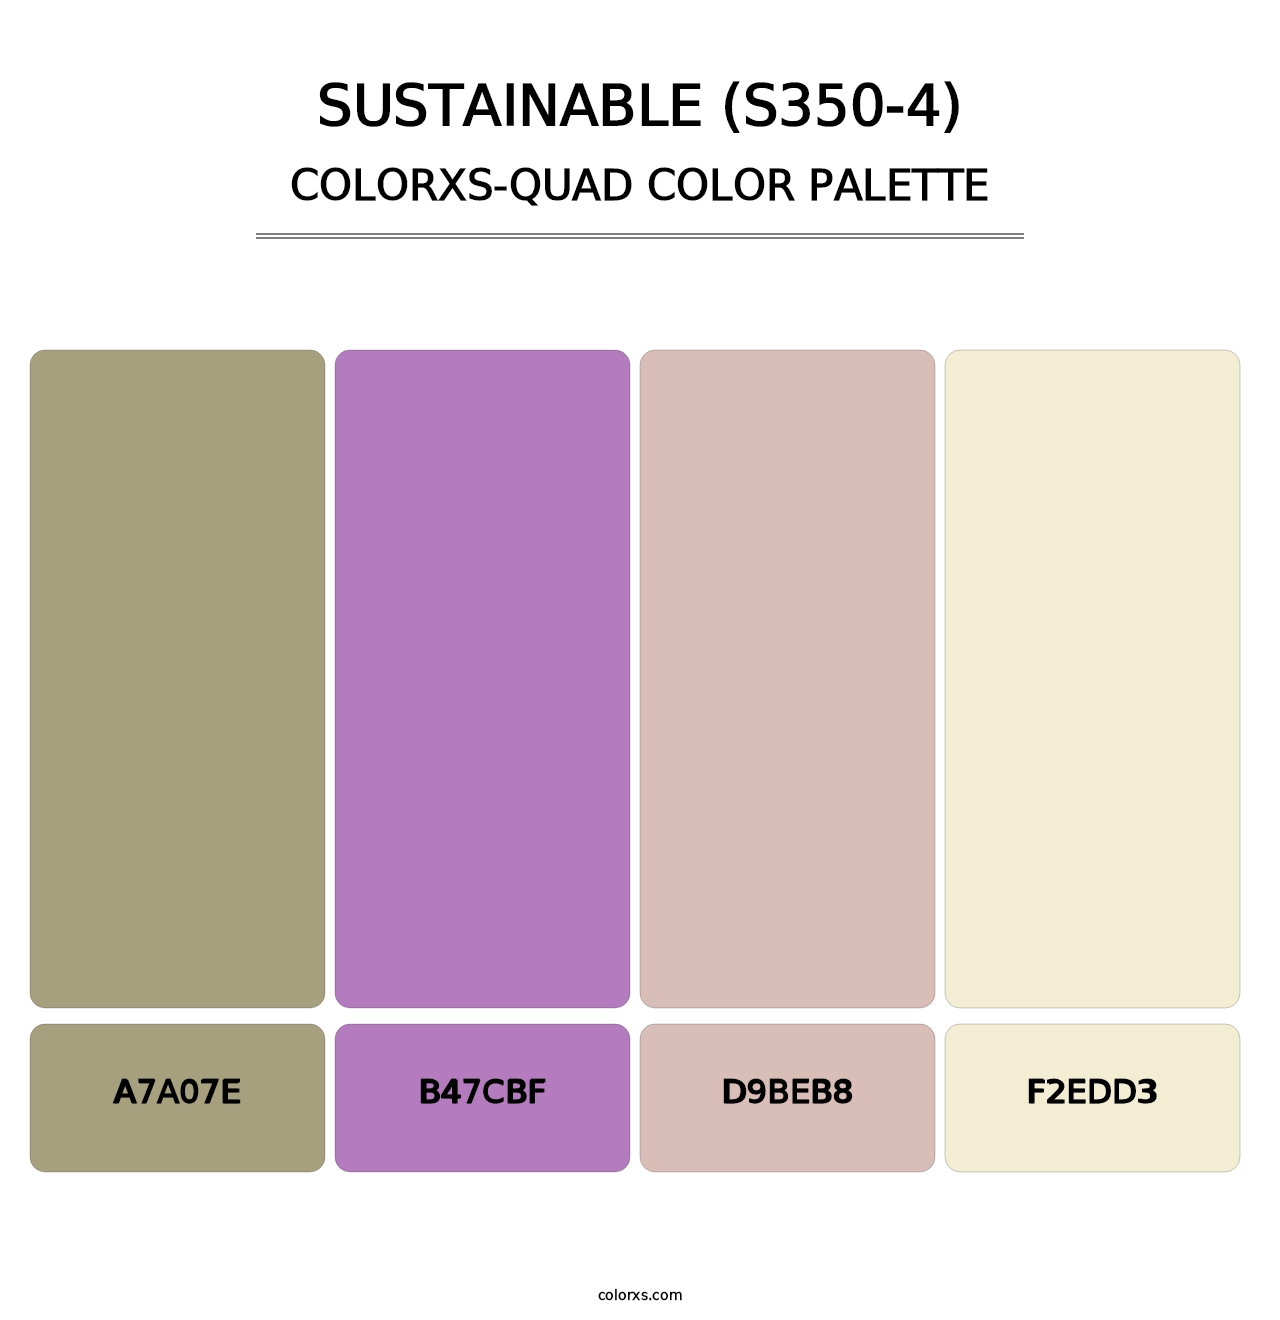 Sustainable (S350-4) - Colorxs Quad Palette